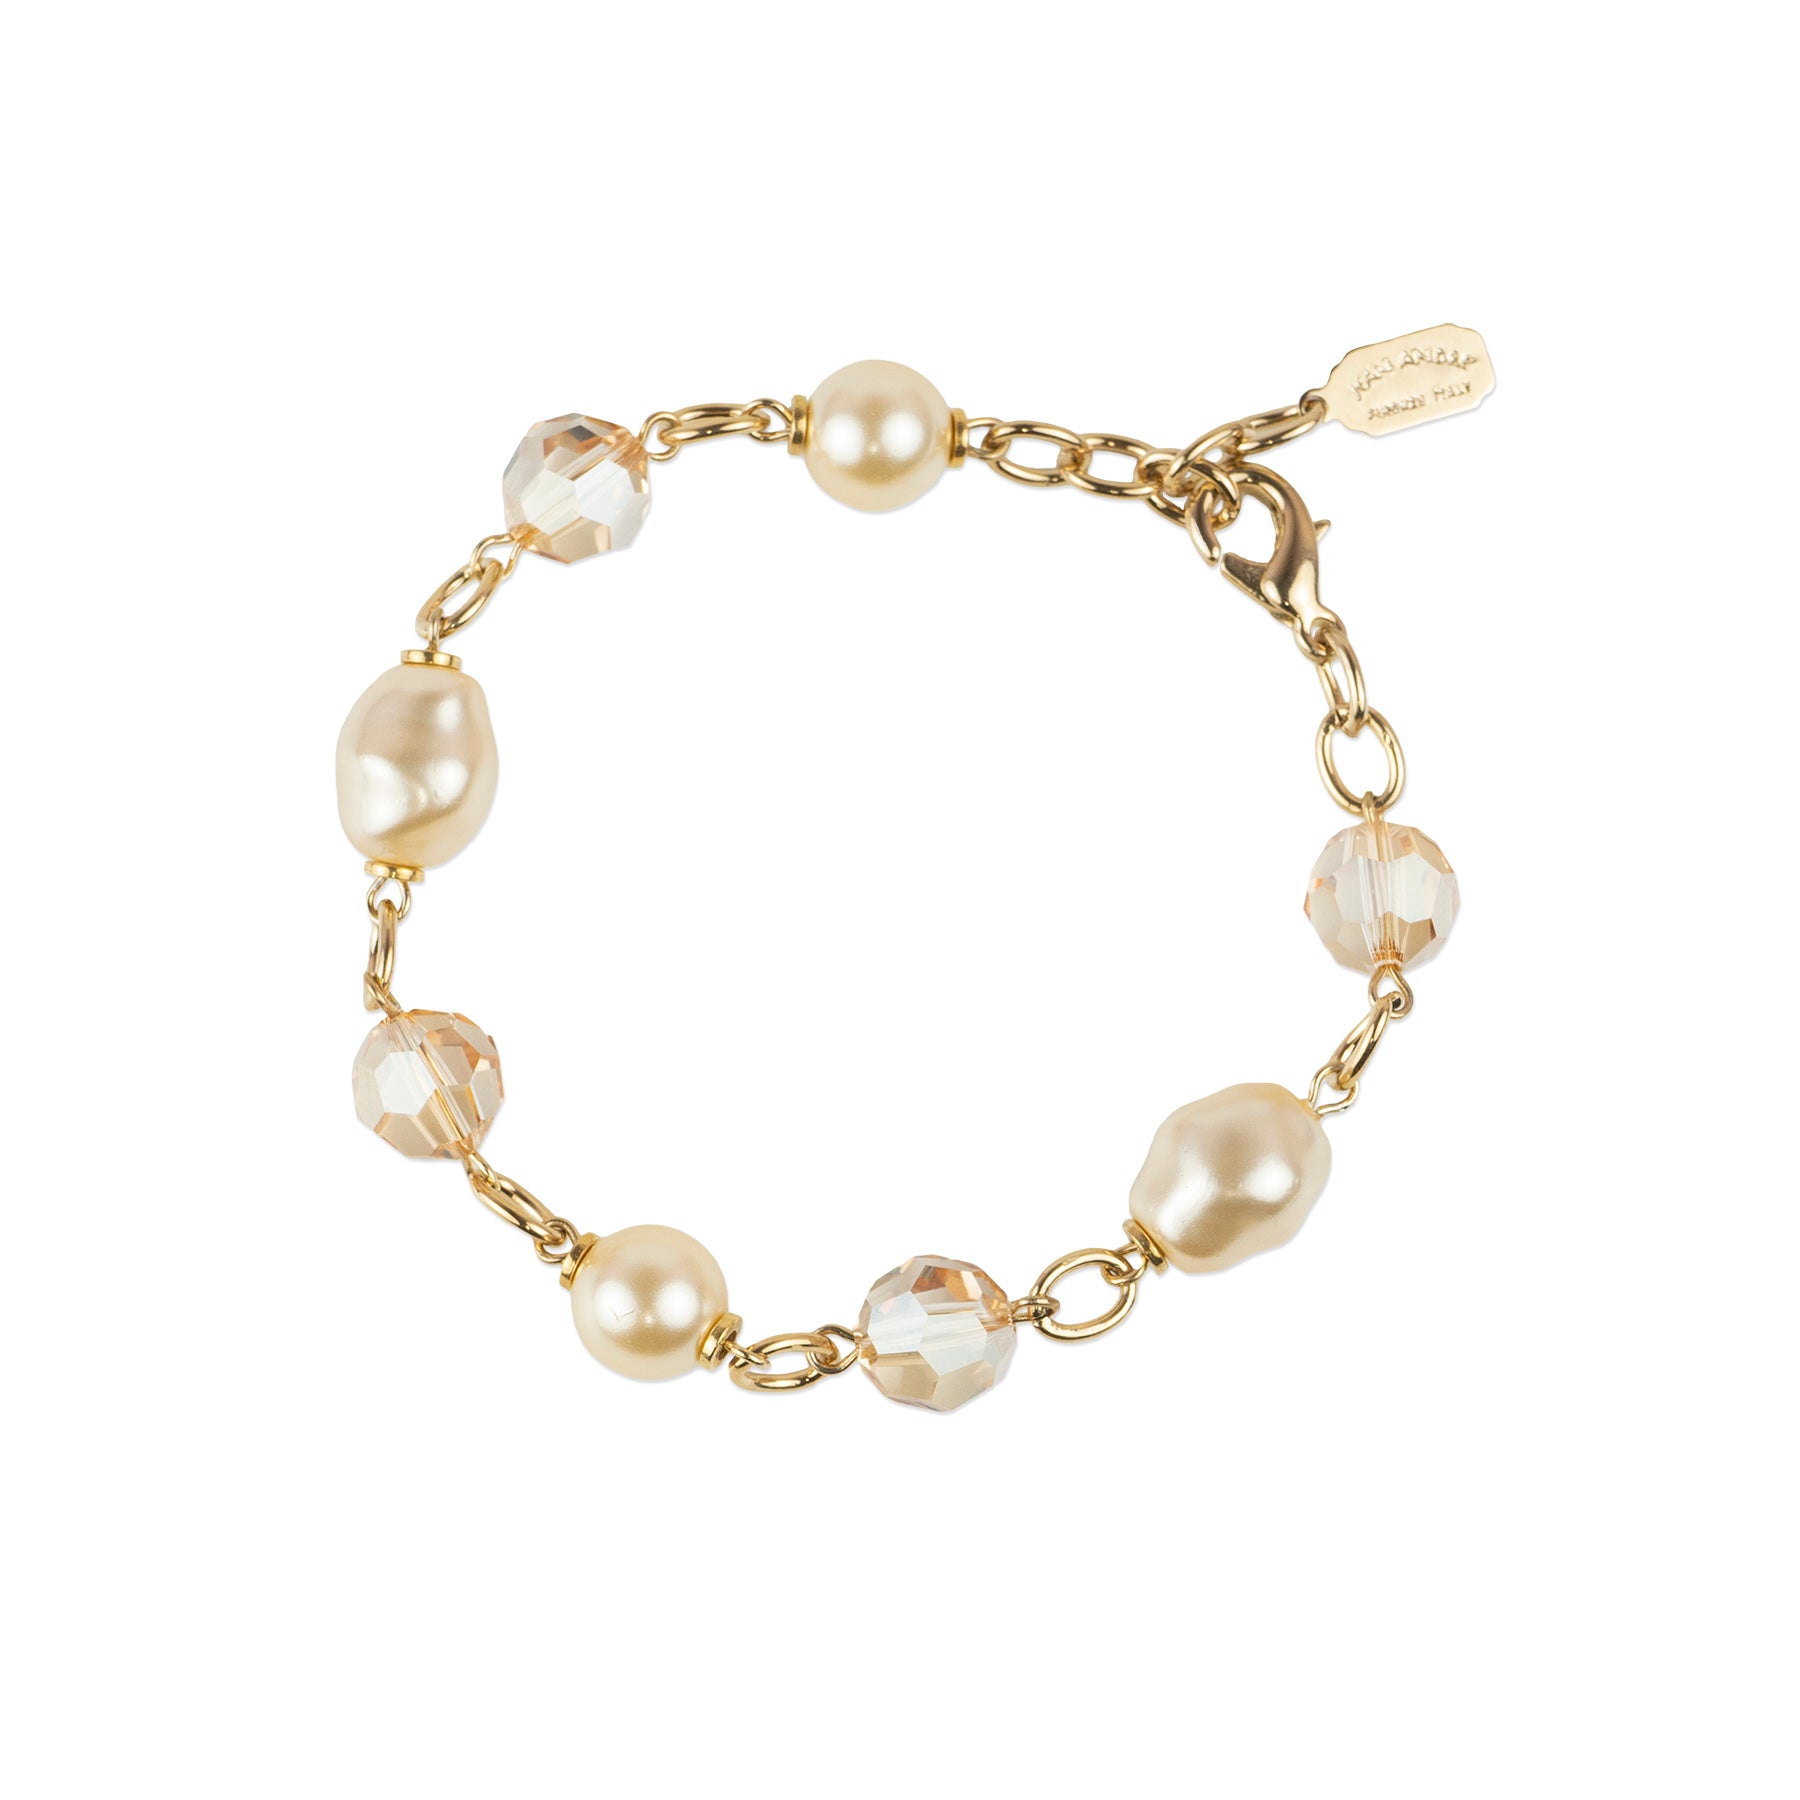 Pearl and Swarovski crystal bracelet